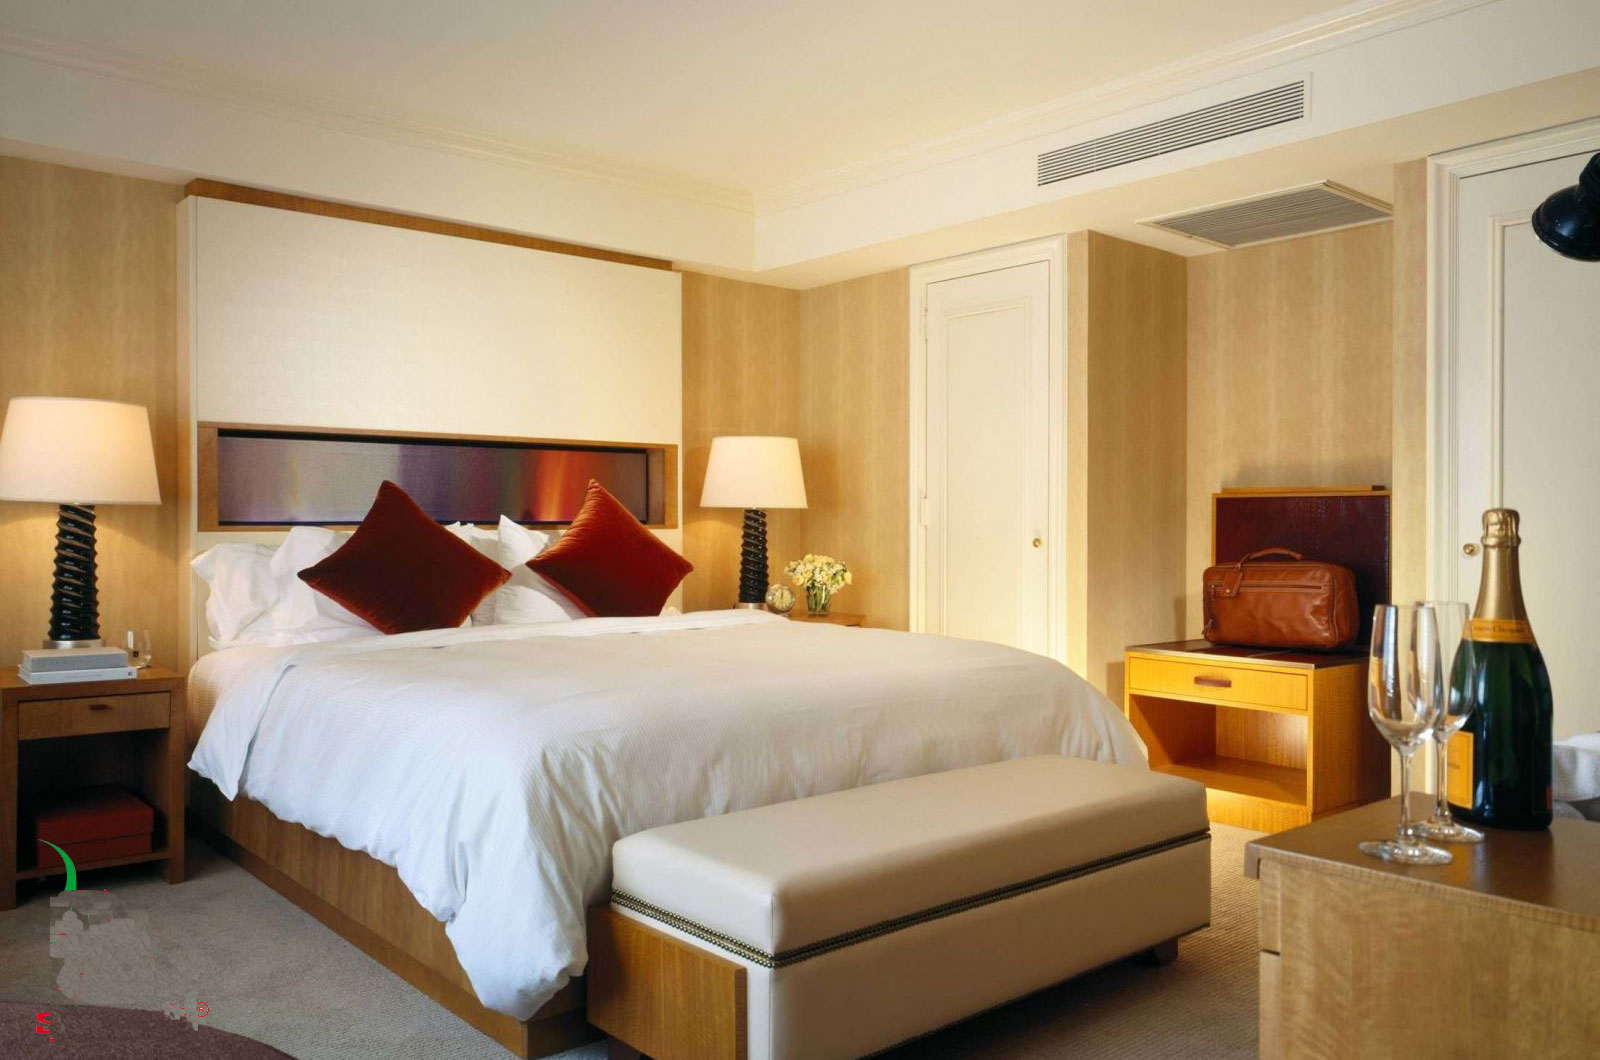  FBFC71DVM phù hợp cho những ăn phòng ngủ khách sạn